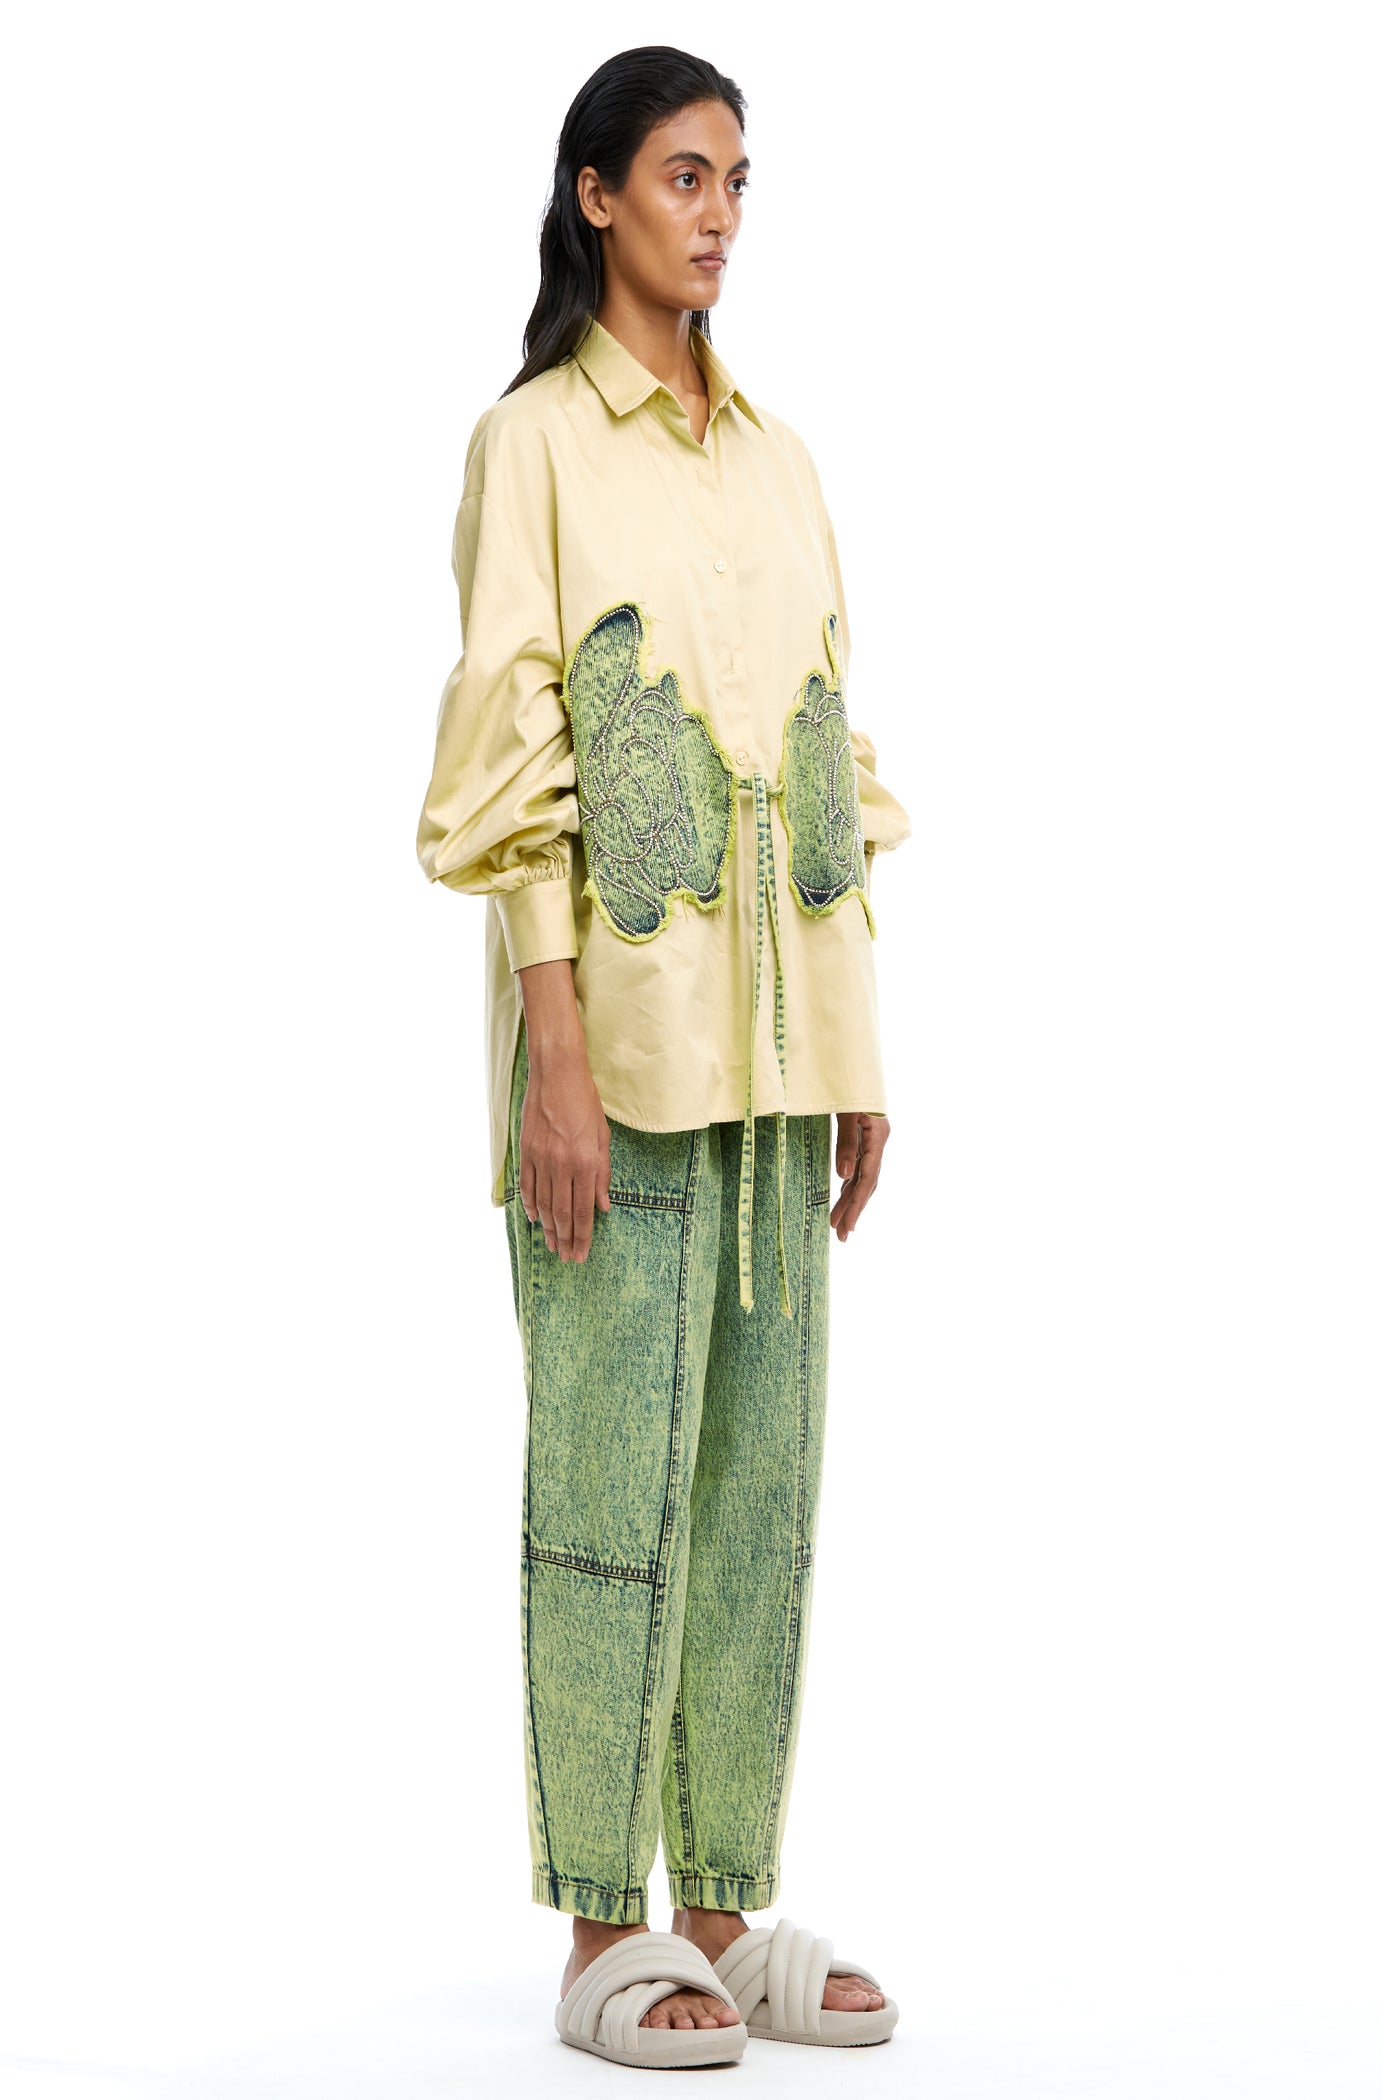 Kanika Goyal Label Warped Vine Denim Appliqué Shirt Yellow indian designer wear online shopping melange singapore